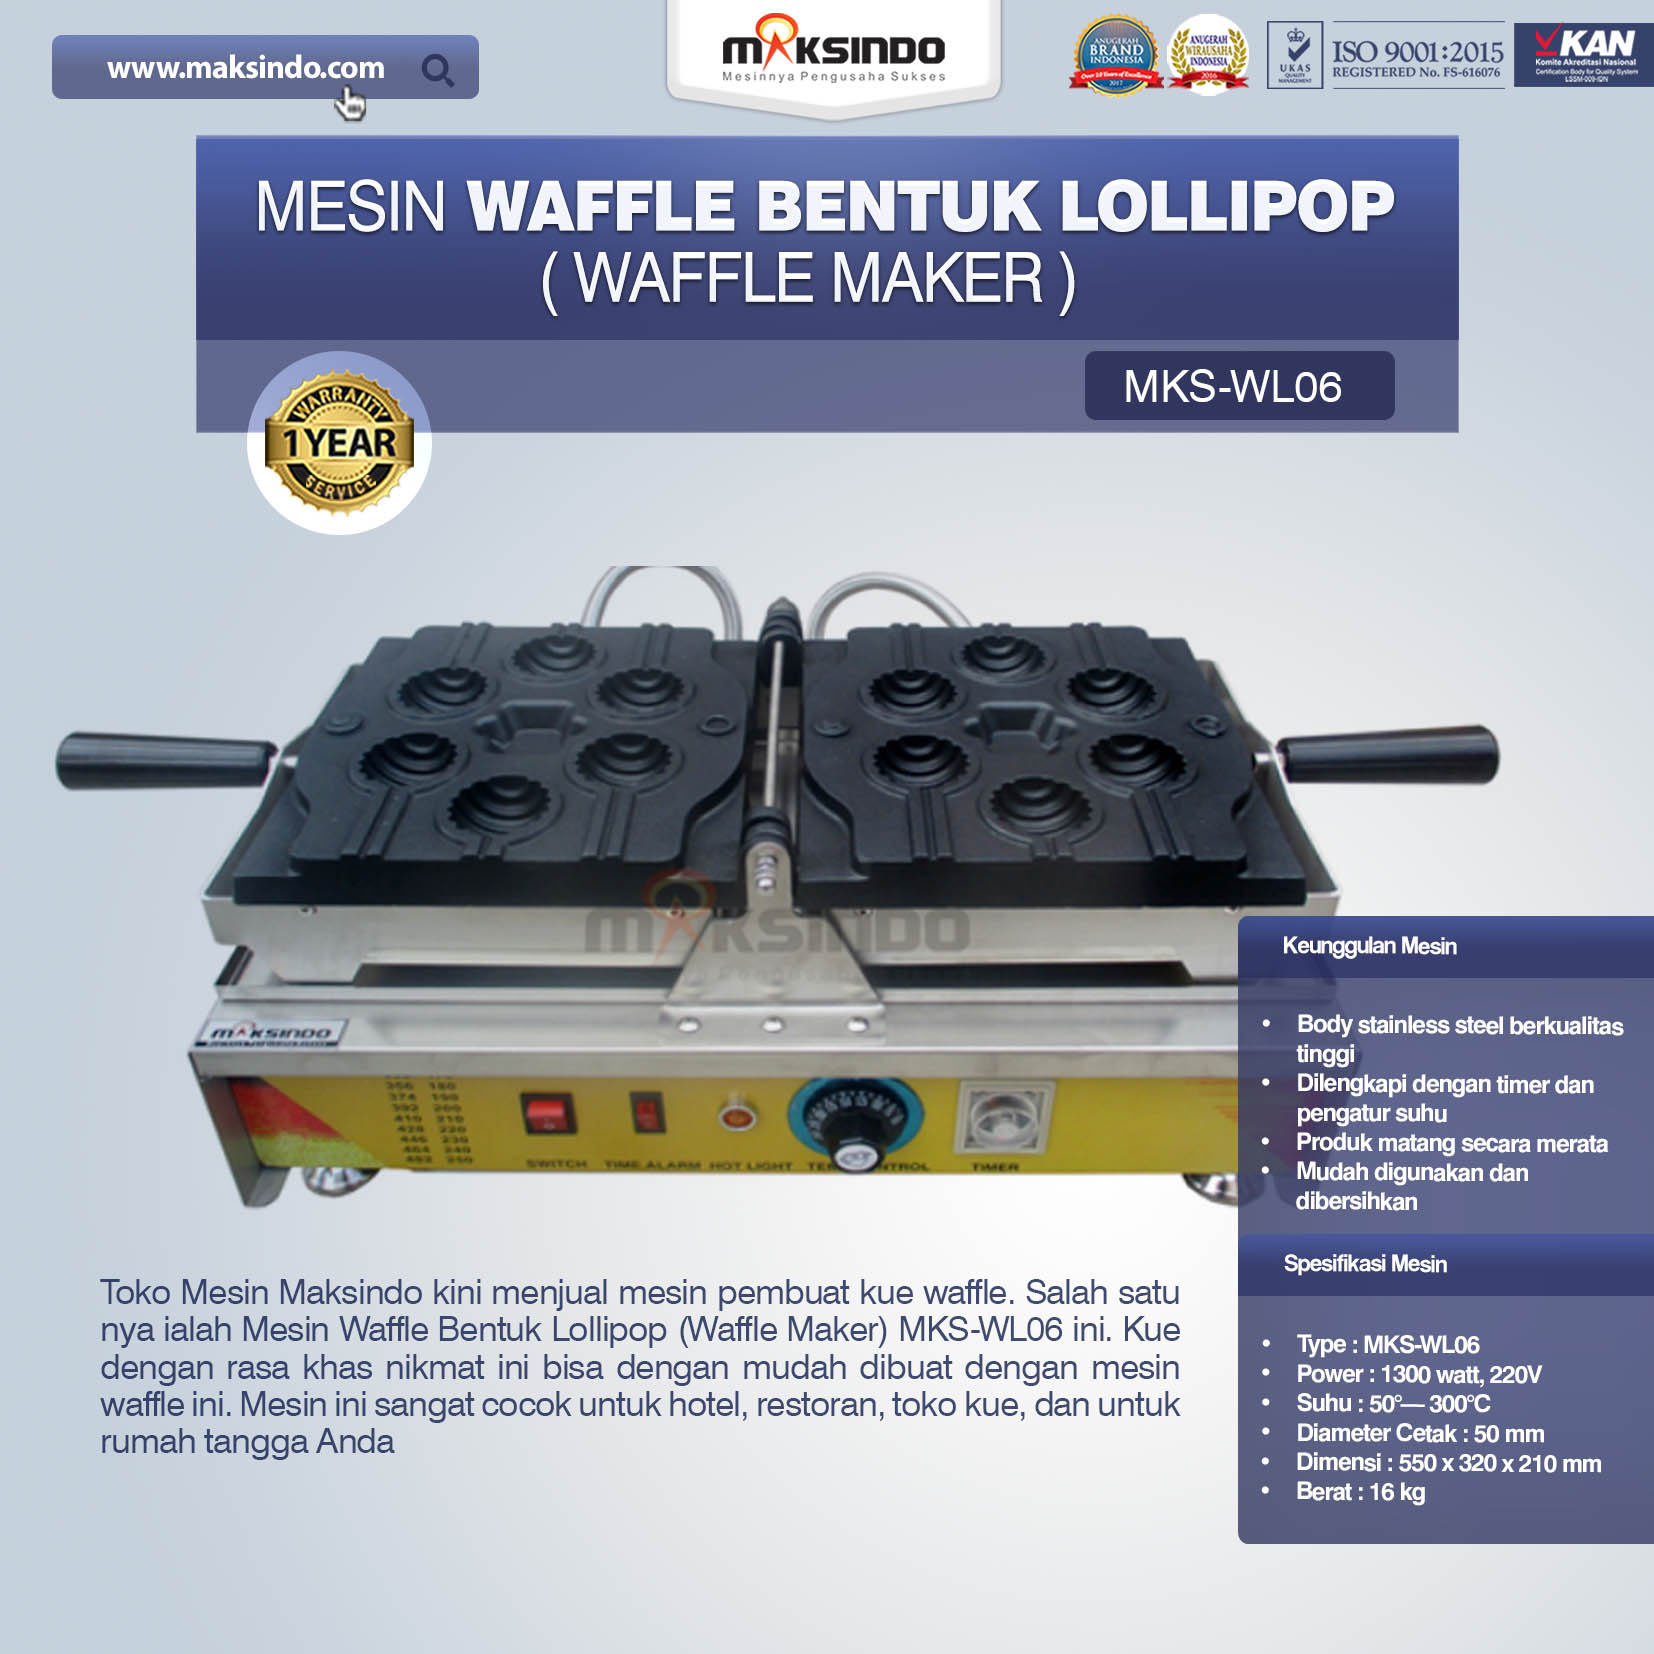 Jual Mesin Waffle Bentuk Lollipop (Waffle Maker) MKS-WL06 di Malang